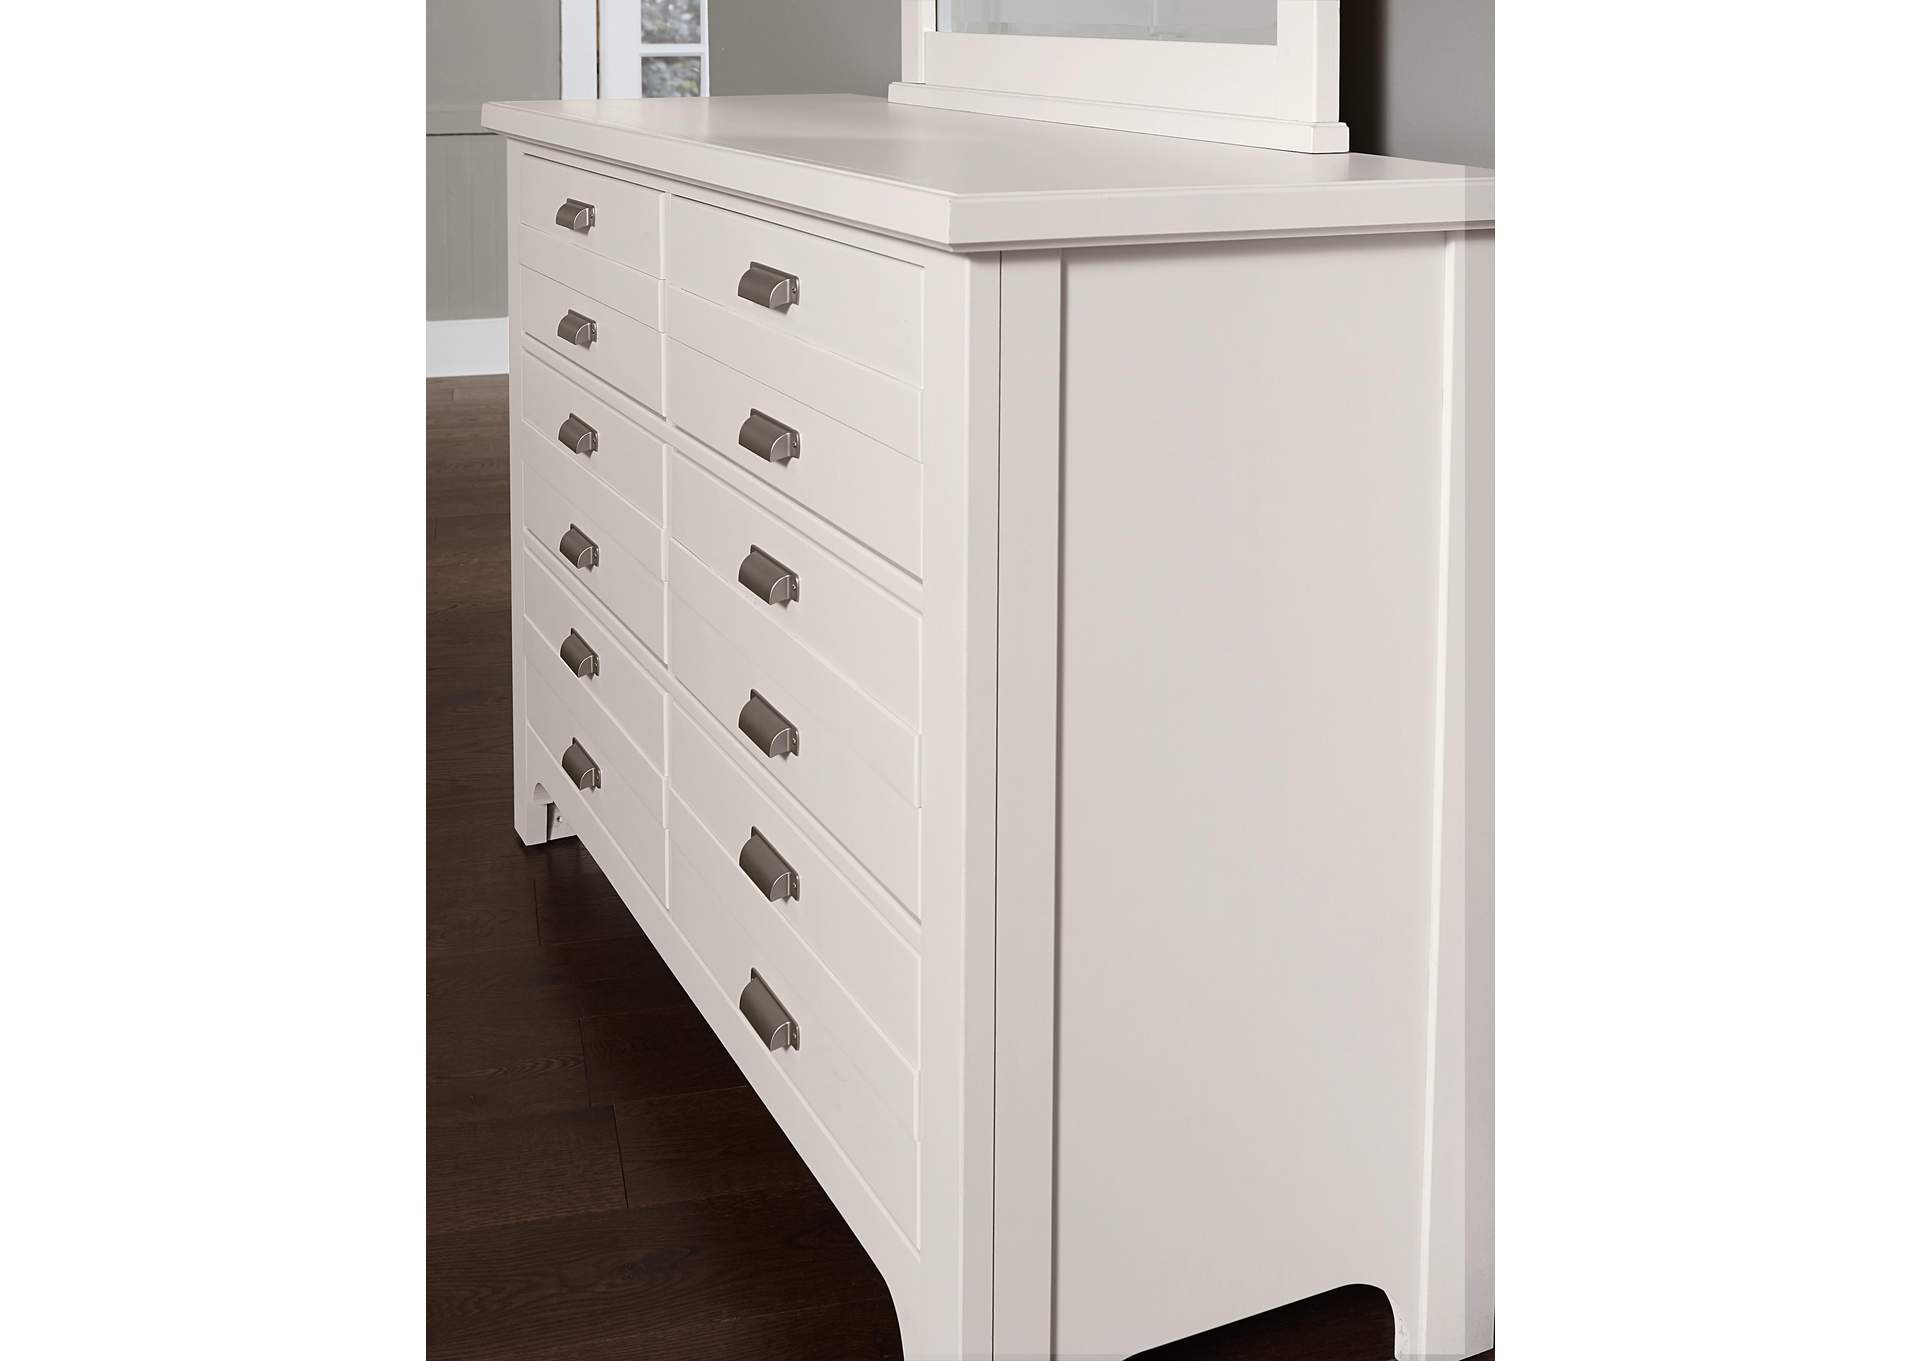 Bungalow Lattice White Double Dresser - 6 Drawer,Vaughan-Bassett